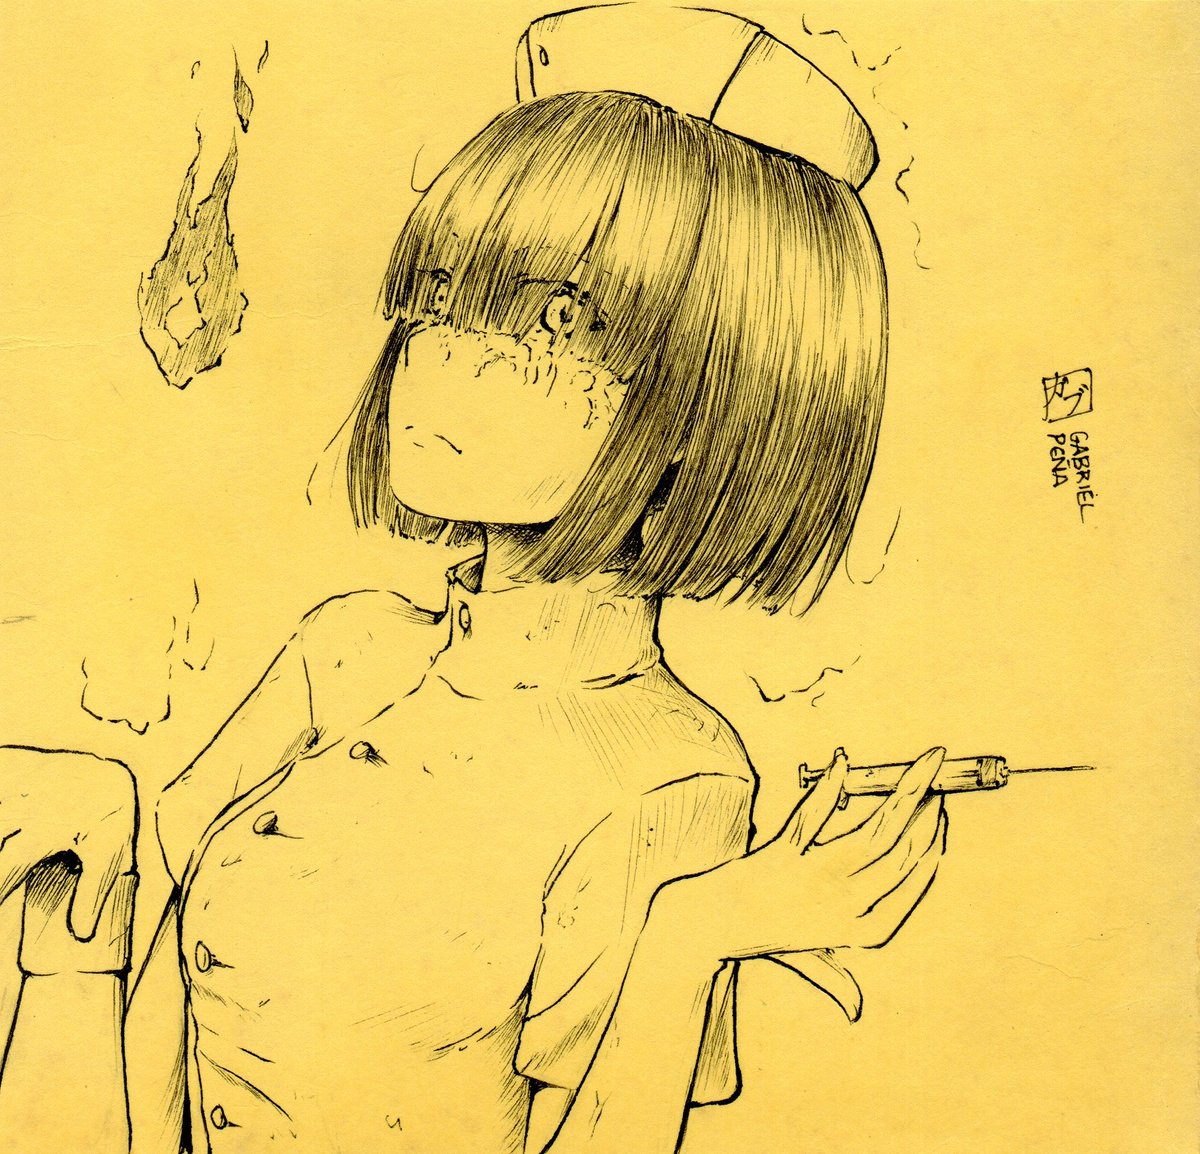 Gabu ガブ على تويتر 幽霊ナース Yuurei Nurse イラスト マンガ オリキャラ おかっぱ 幽霊 漫画家志望 女の子のイラストだけで興味を持ってくれる方へ届け Illustration Oc Manga Japanesehorror T Co Qsaxyjsfbe